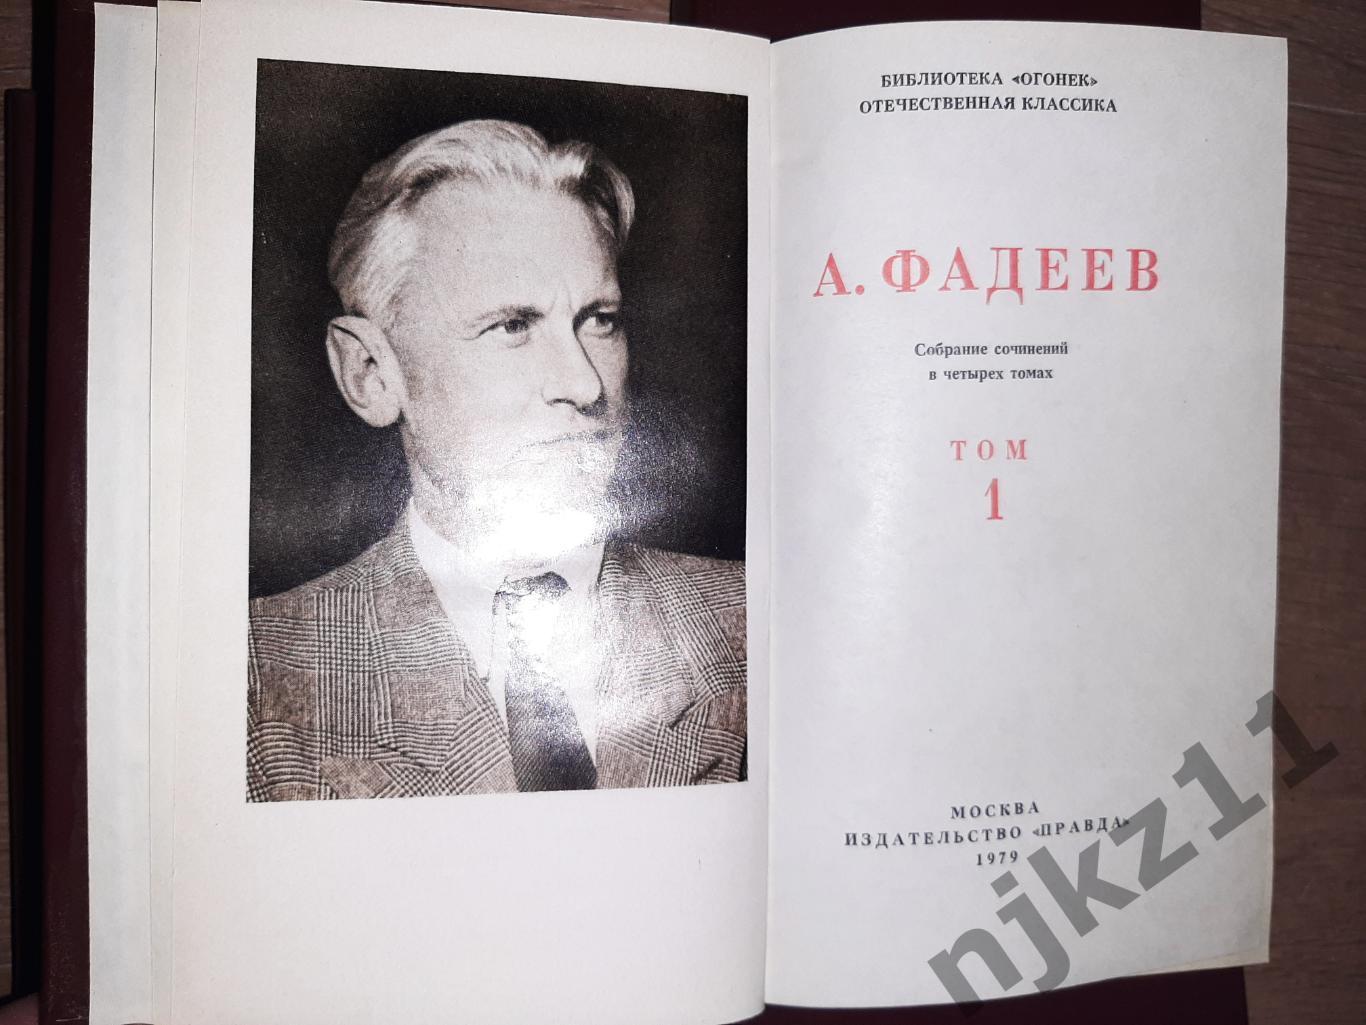 Фадеев, А.А. Собрание сочинений В 4 томах состояние КАК НОВЫЕ 2